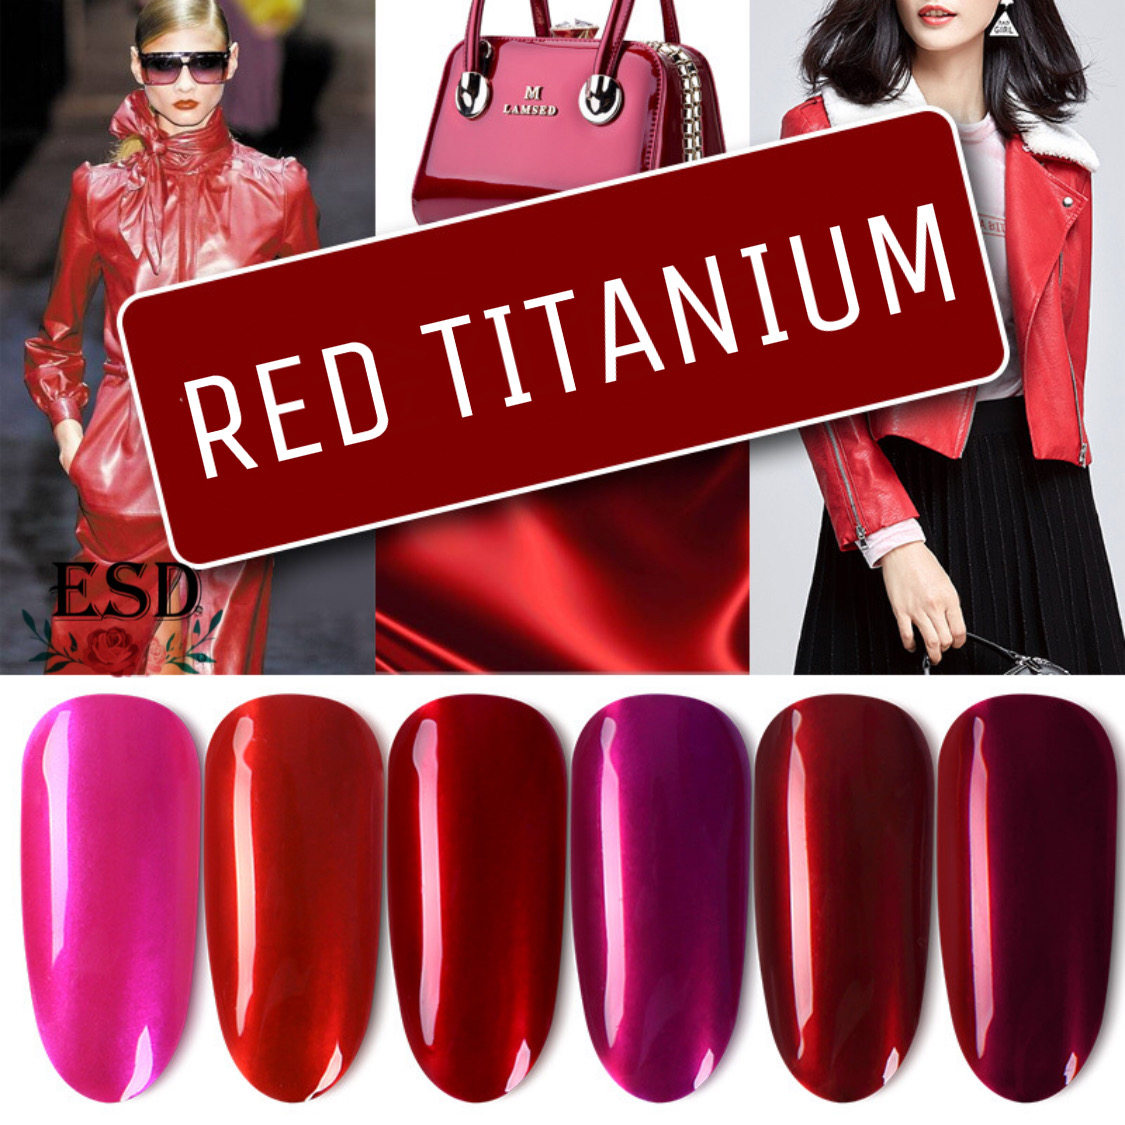 โปรโมชั่น Milan สีทาเล็บเจล สีแดง ไททาเนียม ขนาด 15 ml. (อบ UV เท่านั้่น) / Milan Red Titanium Color Series Nail Gel UV Polish 15 ml.